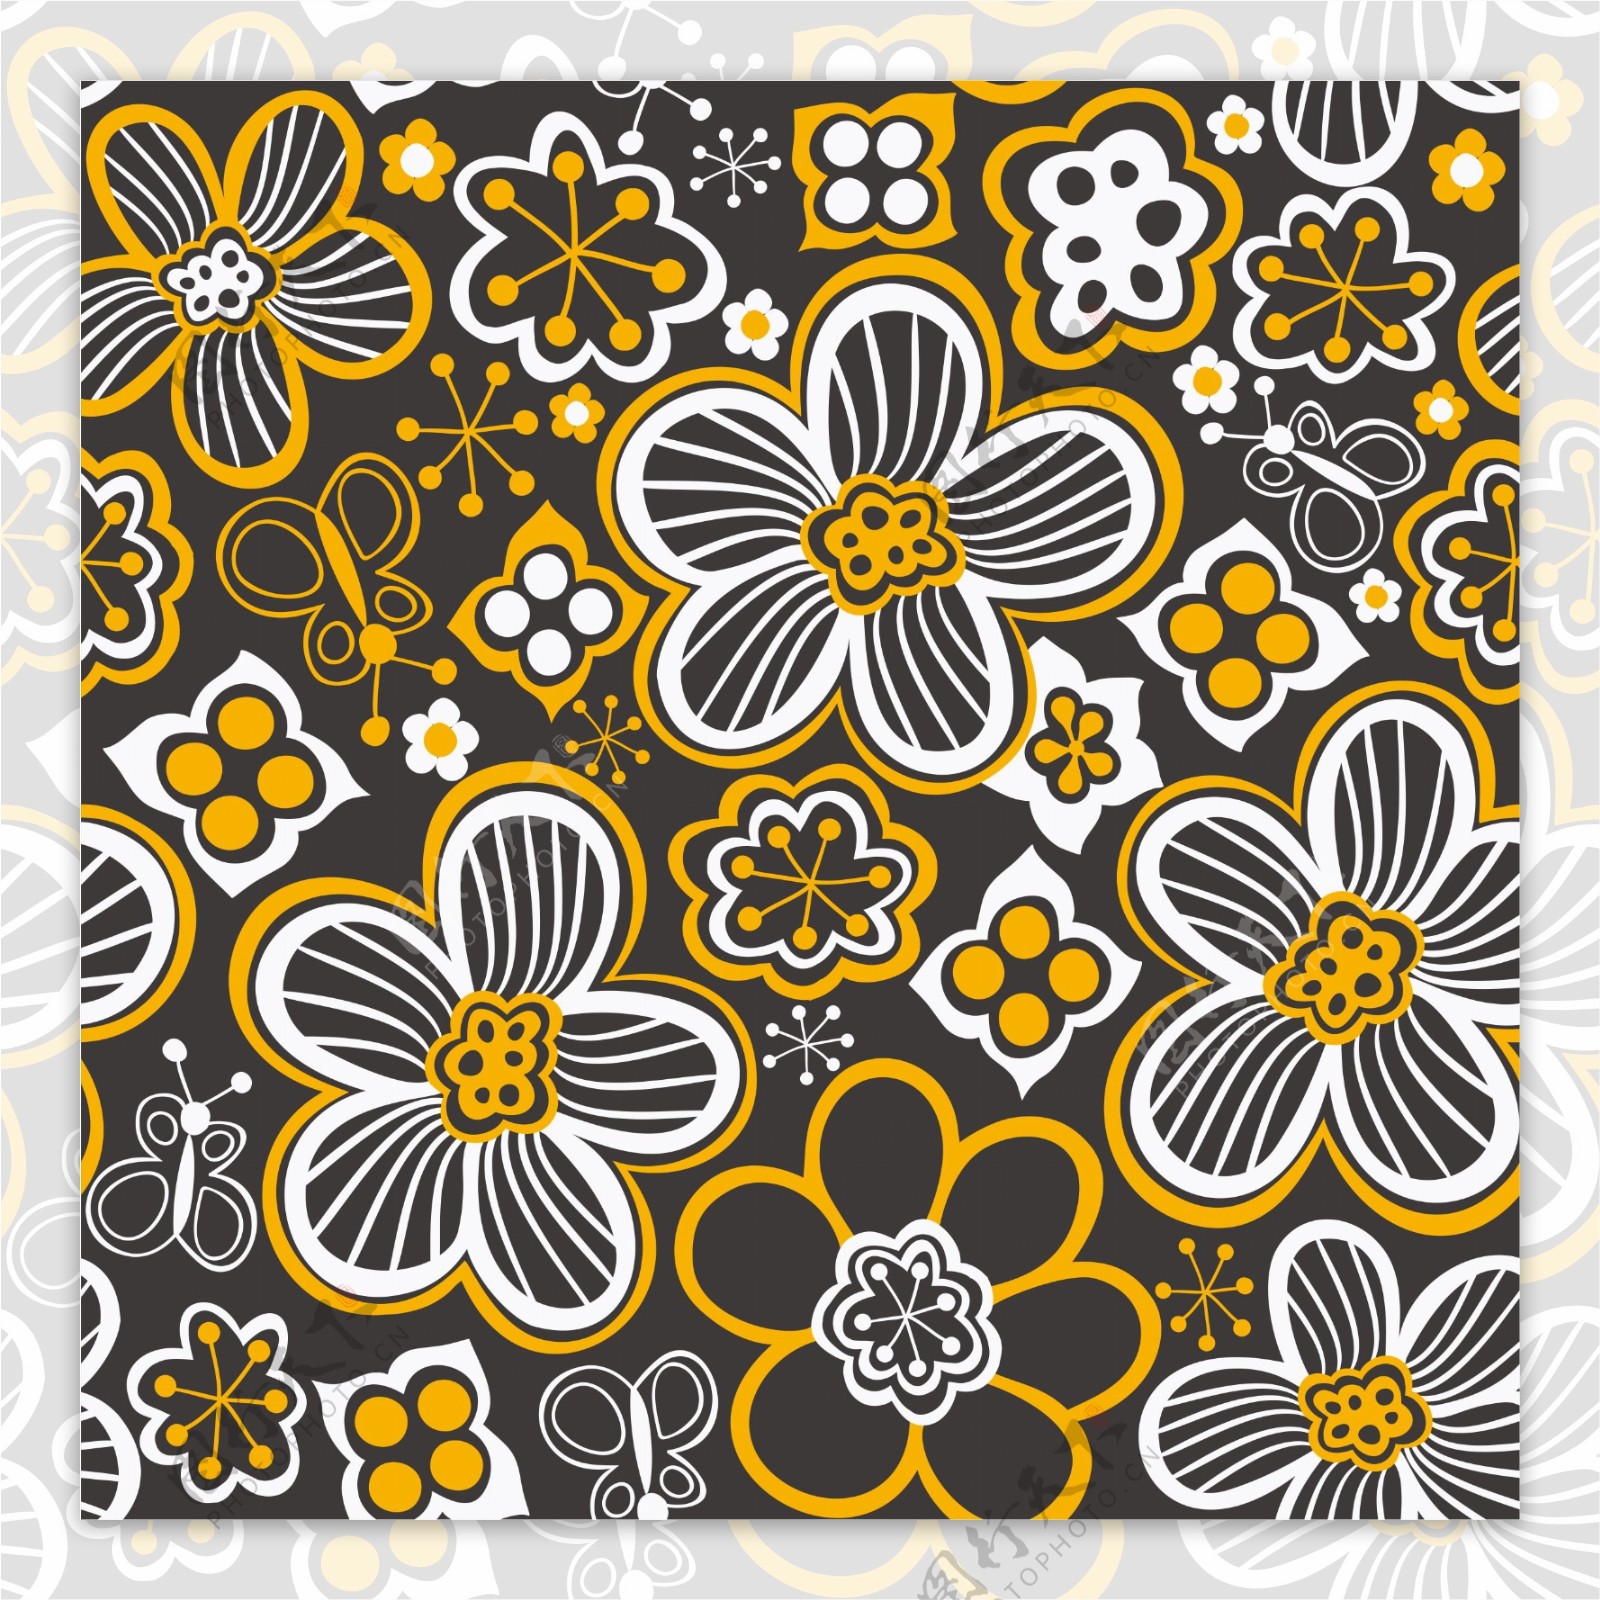 用鲜花和蝴蝶无尽的花卉图案的无缝模式的无缝纹理可用于墙纸